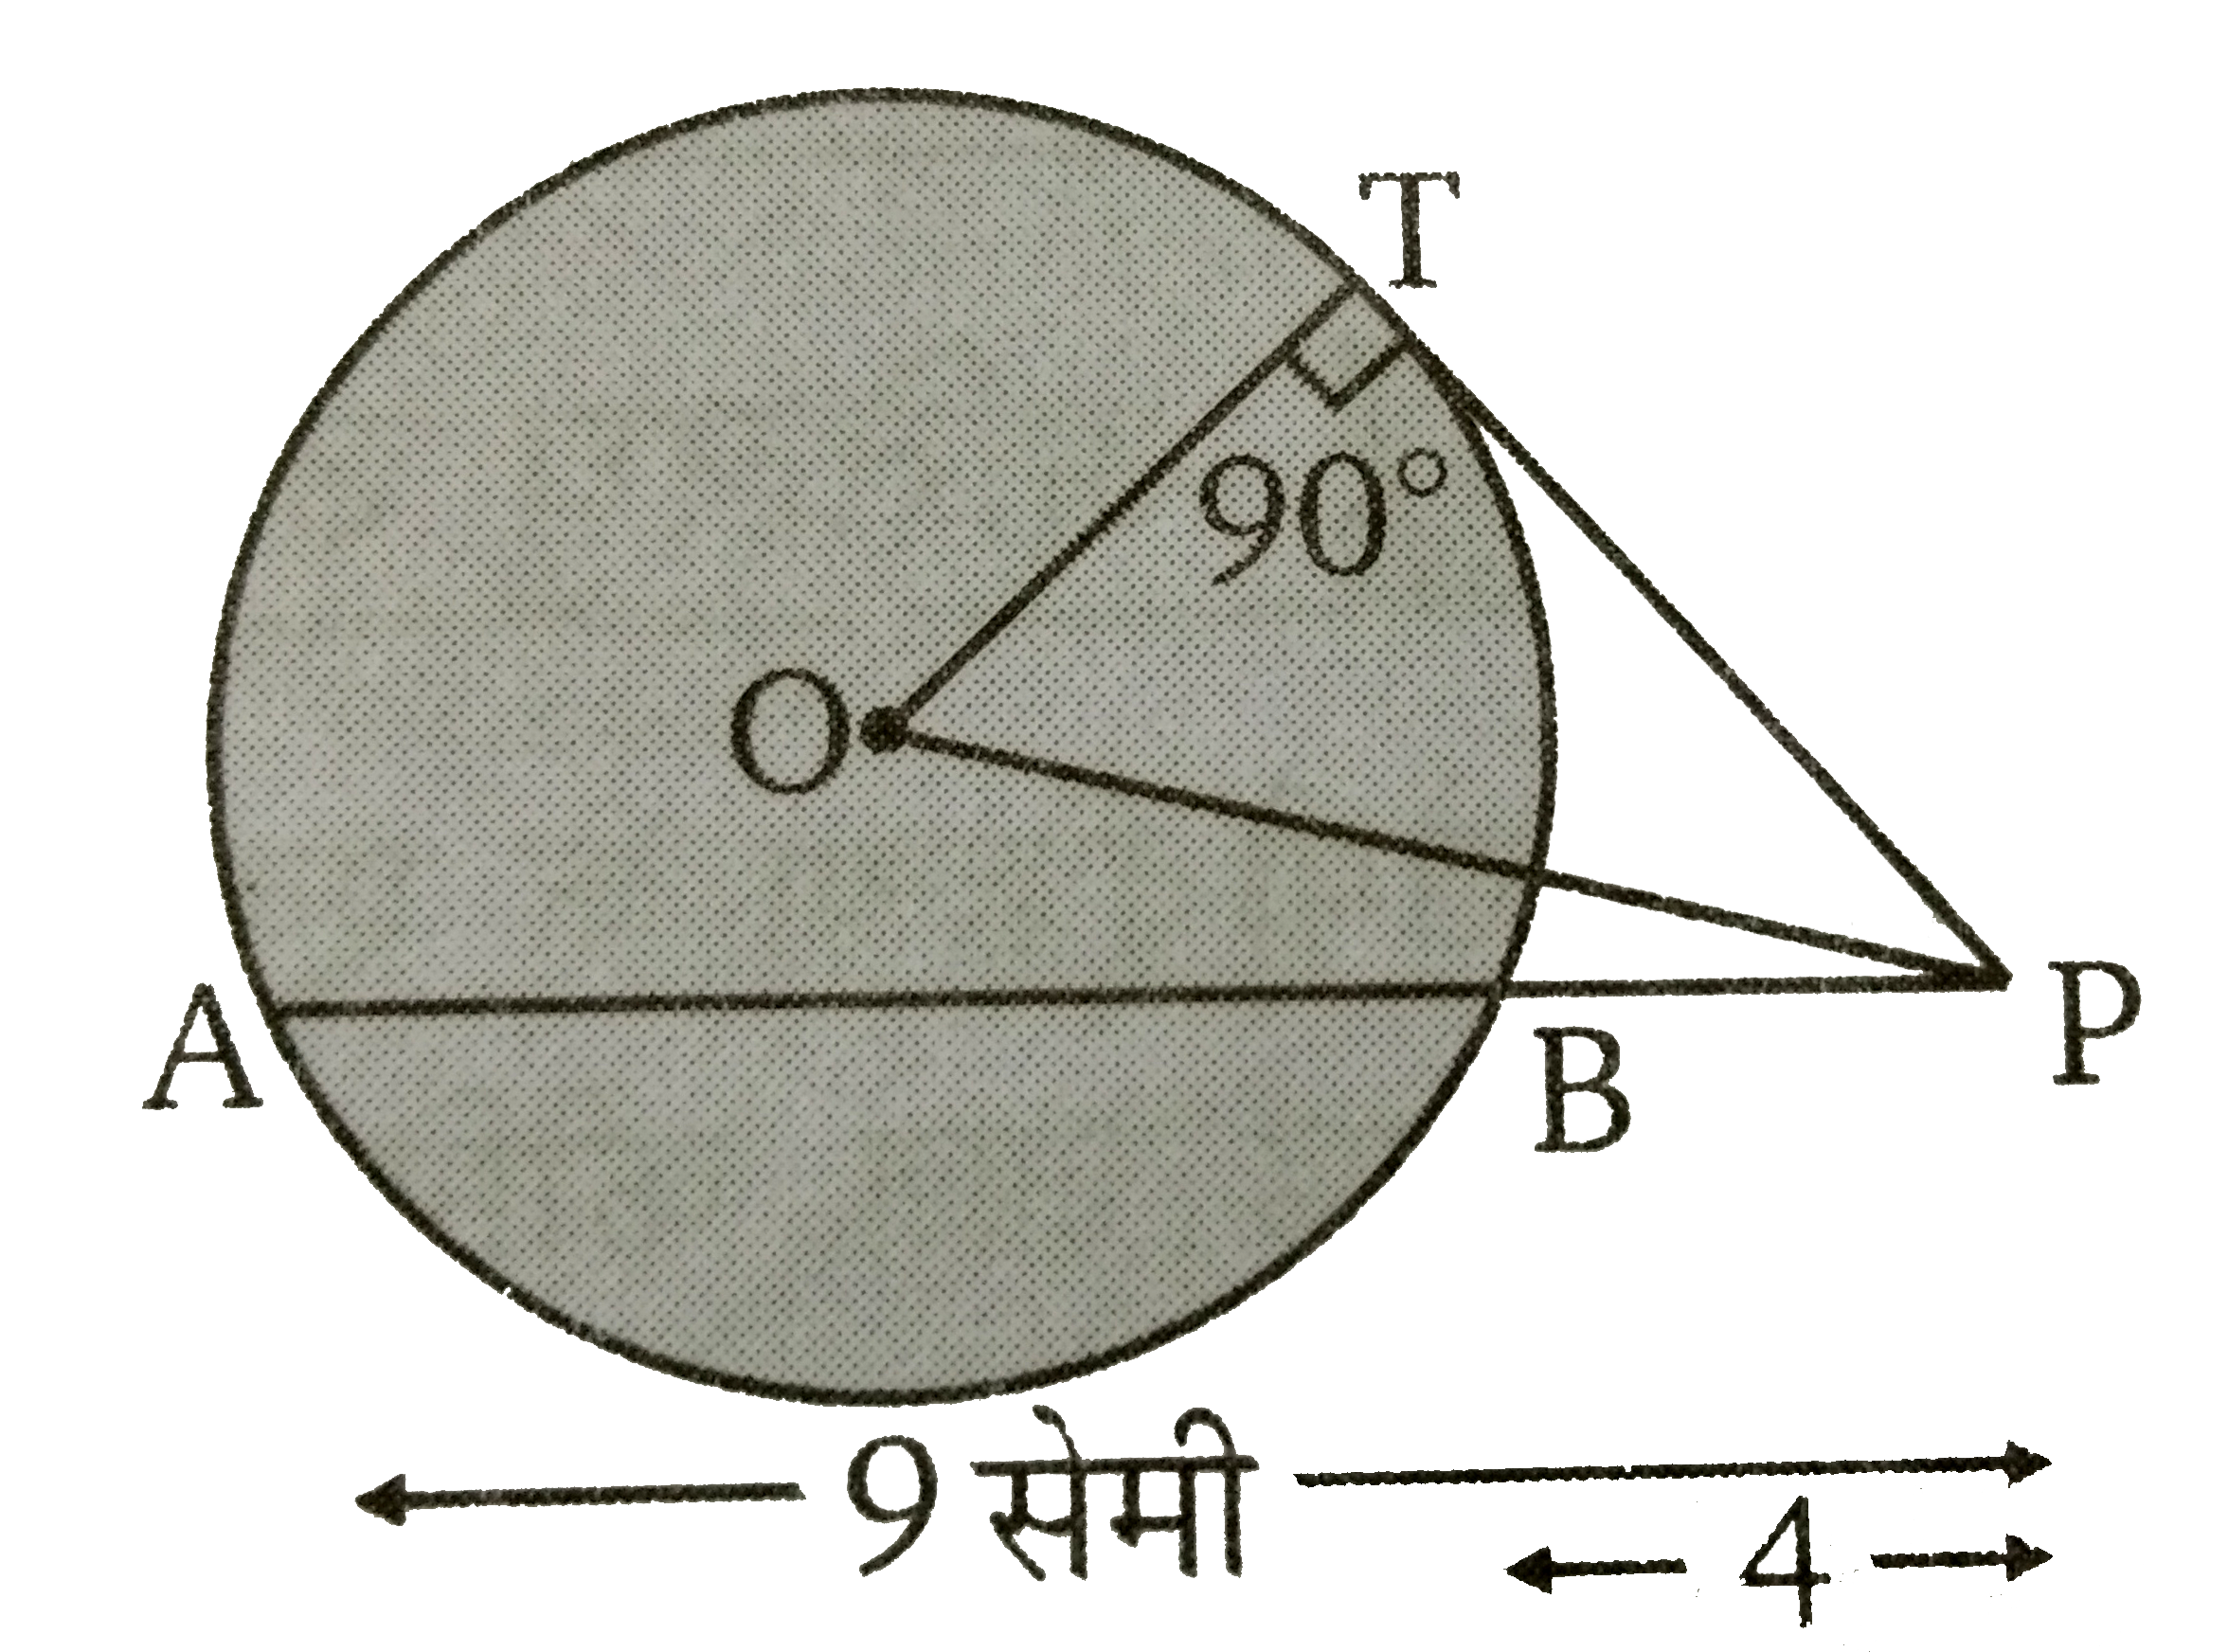 चित्र  में O  वृत्त का केंद्र है, PBA  वृत्त की छेदक रेखा तथा PT  वृत्त की स्पर्श रेखा है। यदि PB = 4  सेमी तथा  PA = 9  सेमी है तो PT  की लम्बाई ज्ञात कीजिए ।